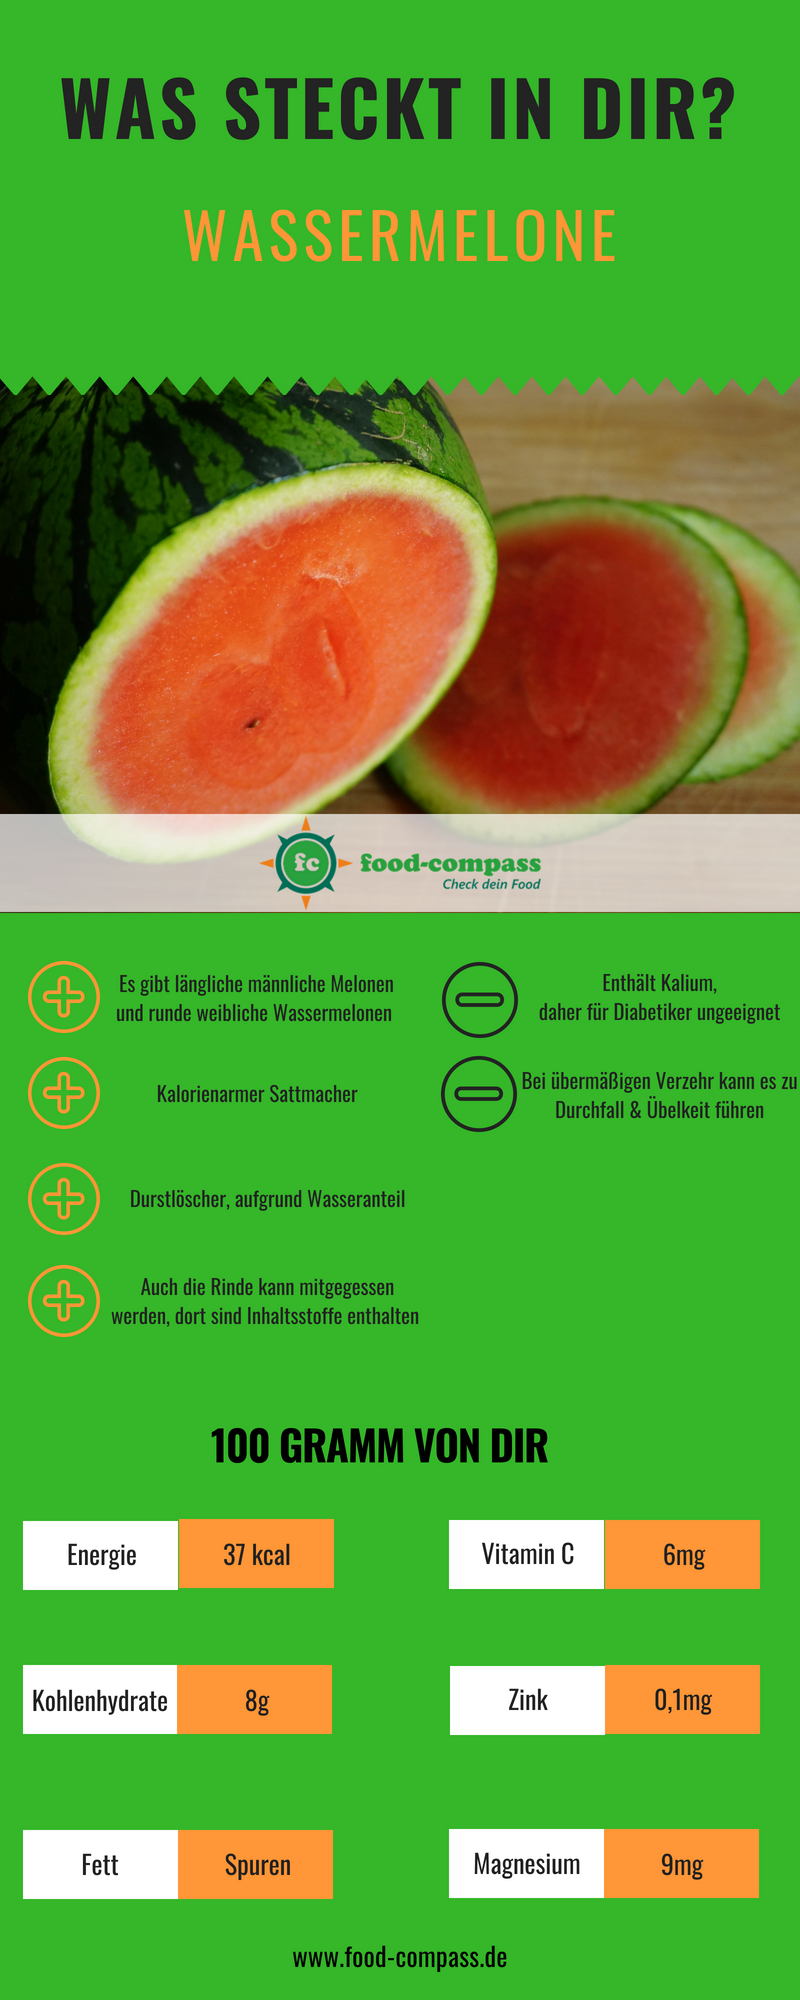 Nährstofftabelle der Wassermelone als Infografik